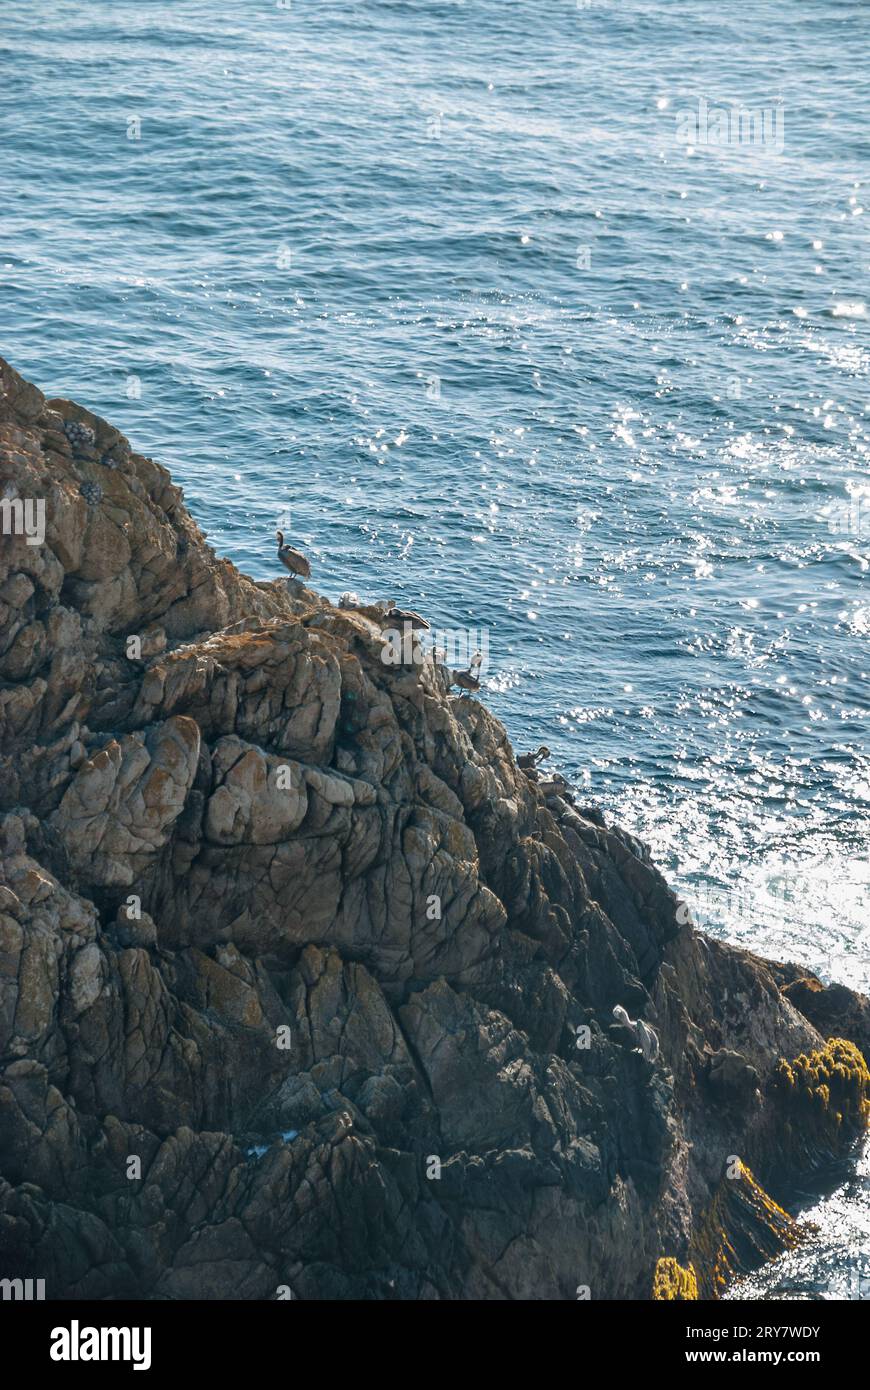 Gregge di pellicani sul ripido pendio di un cilff vicino al mare Foto Stock